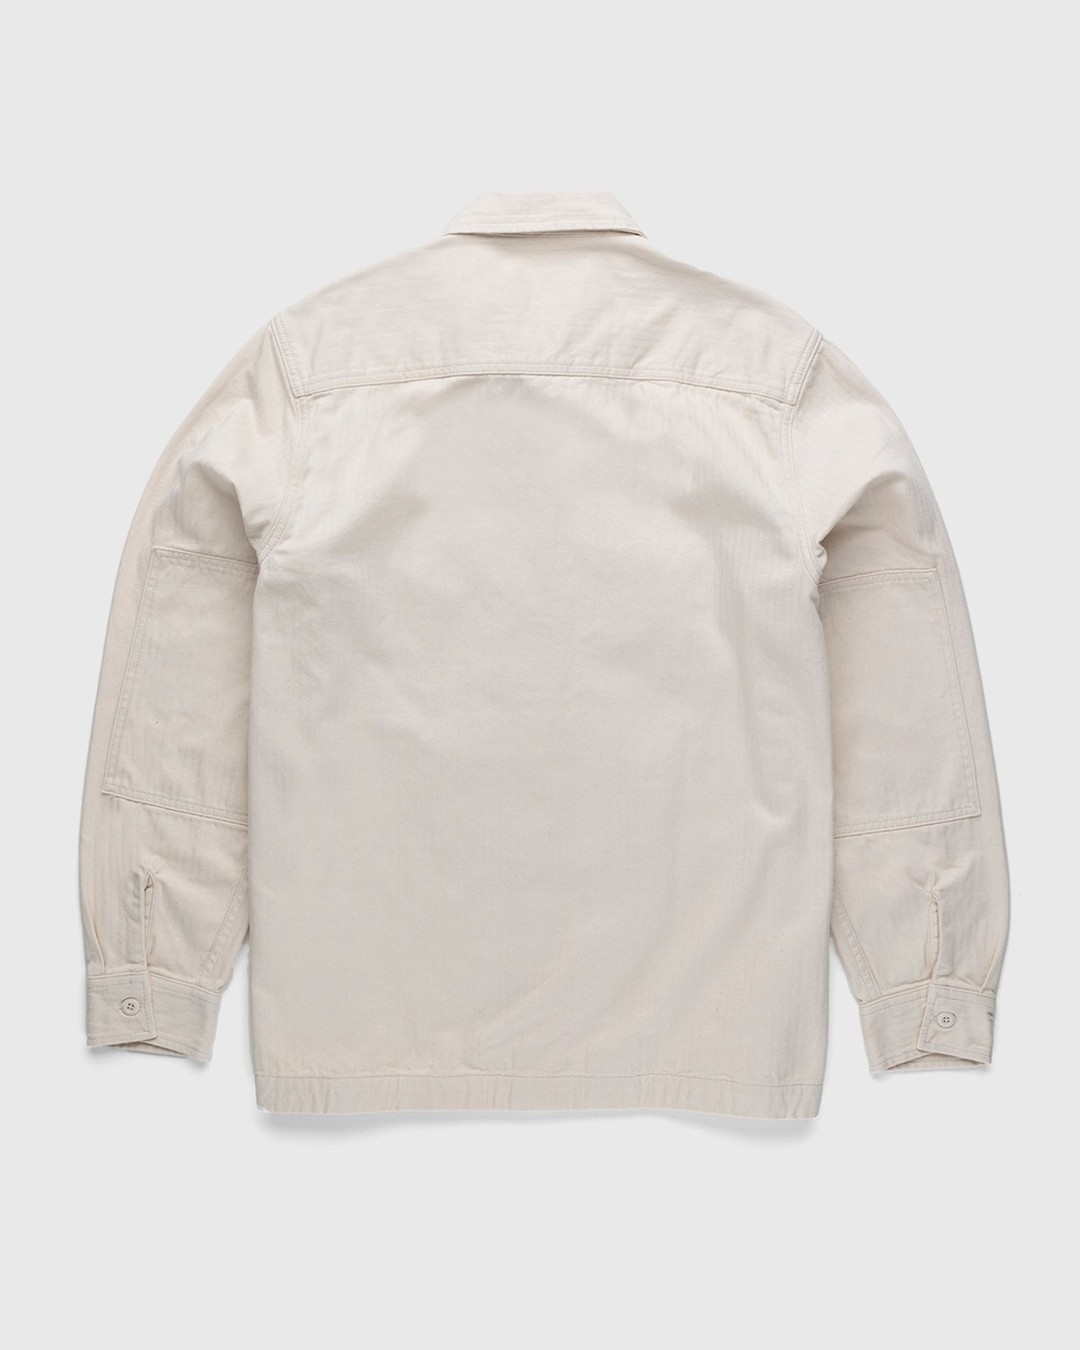 Carhartt WIP – Charter Shirt Natural - Longsleeve Shirts - Beige - Image 2